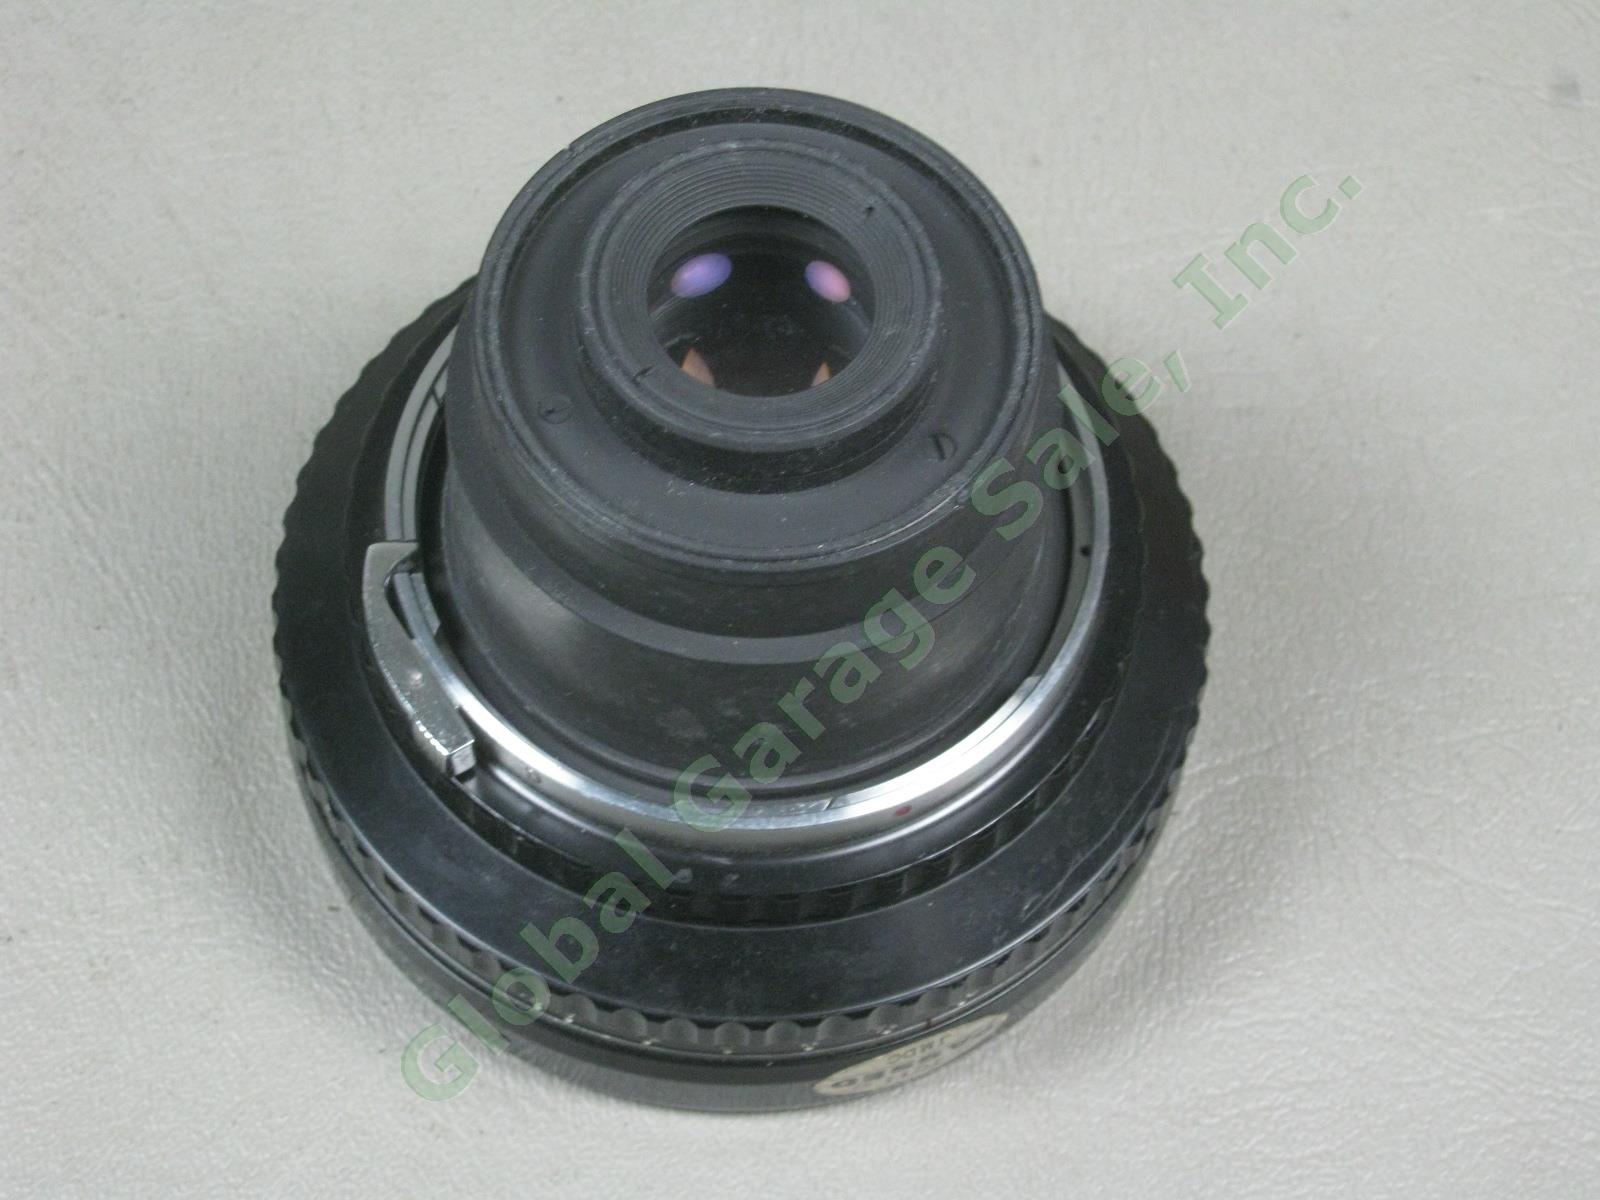 Zenza Bronica EC-TL Camera Nippon Kogaku Nikkor-H 50mm 1:3.5 f/3.5 Lens Bundle 12